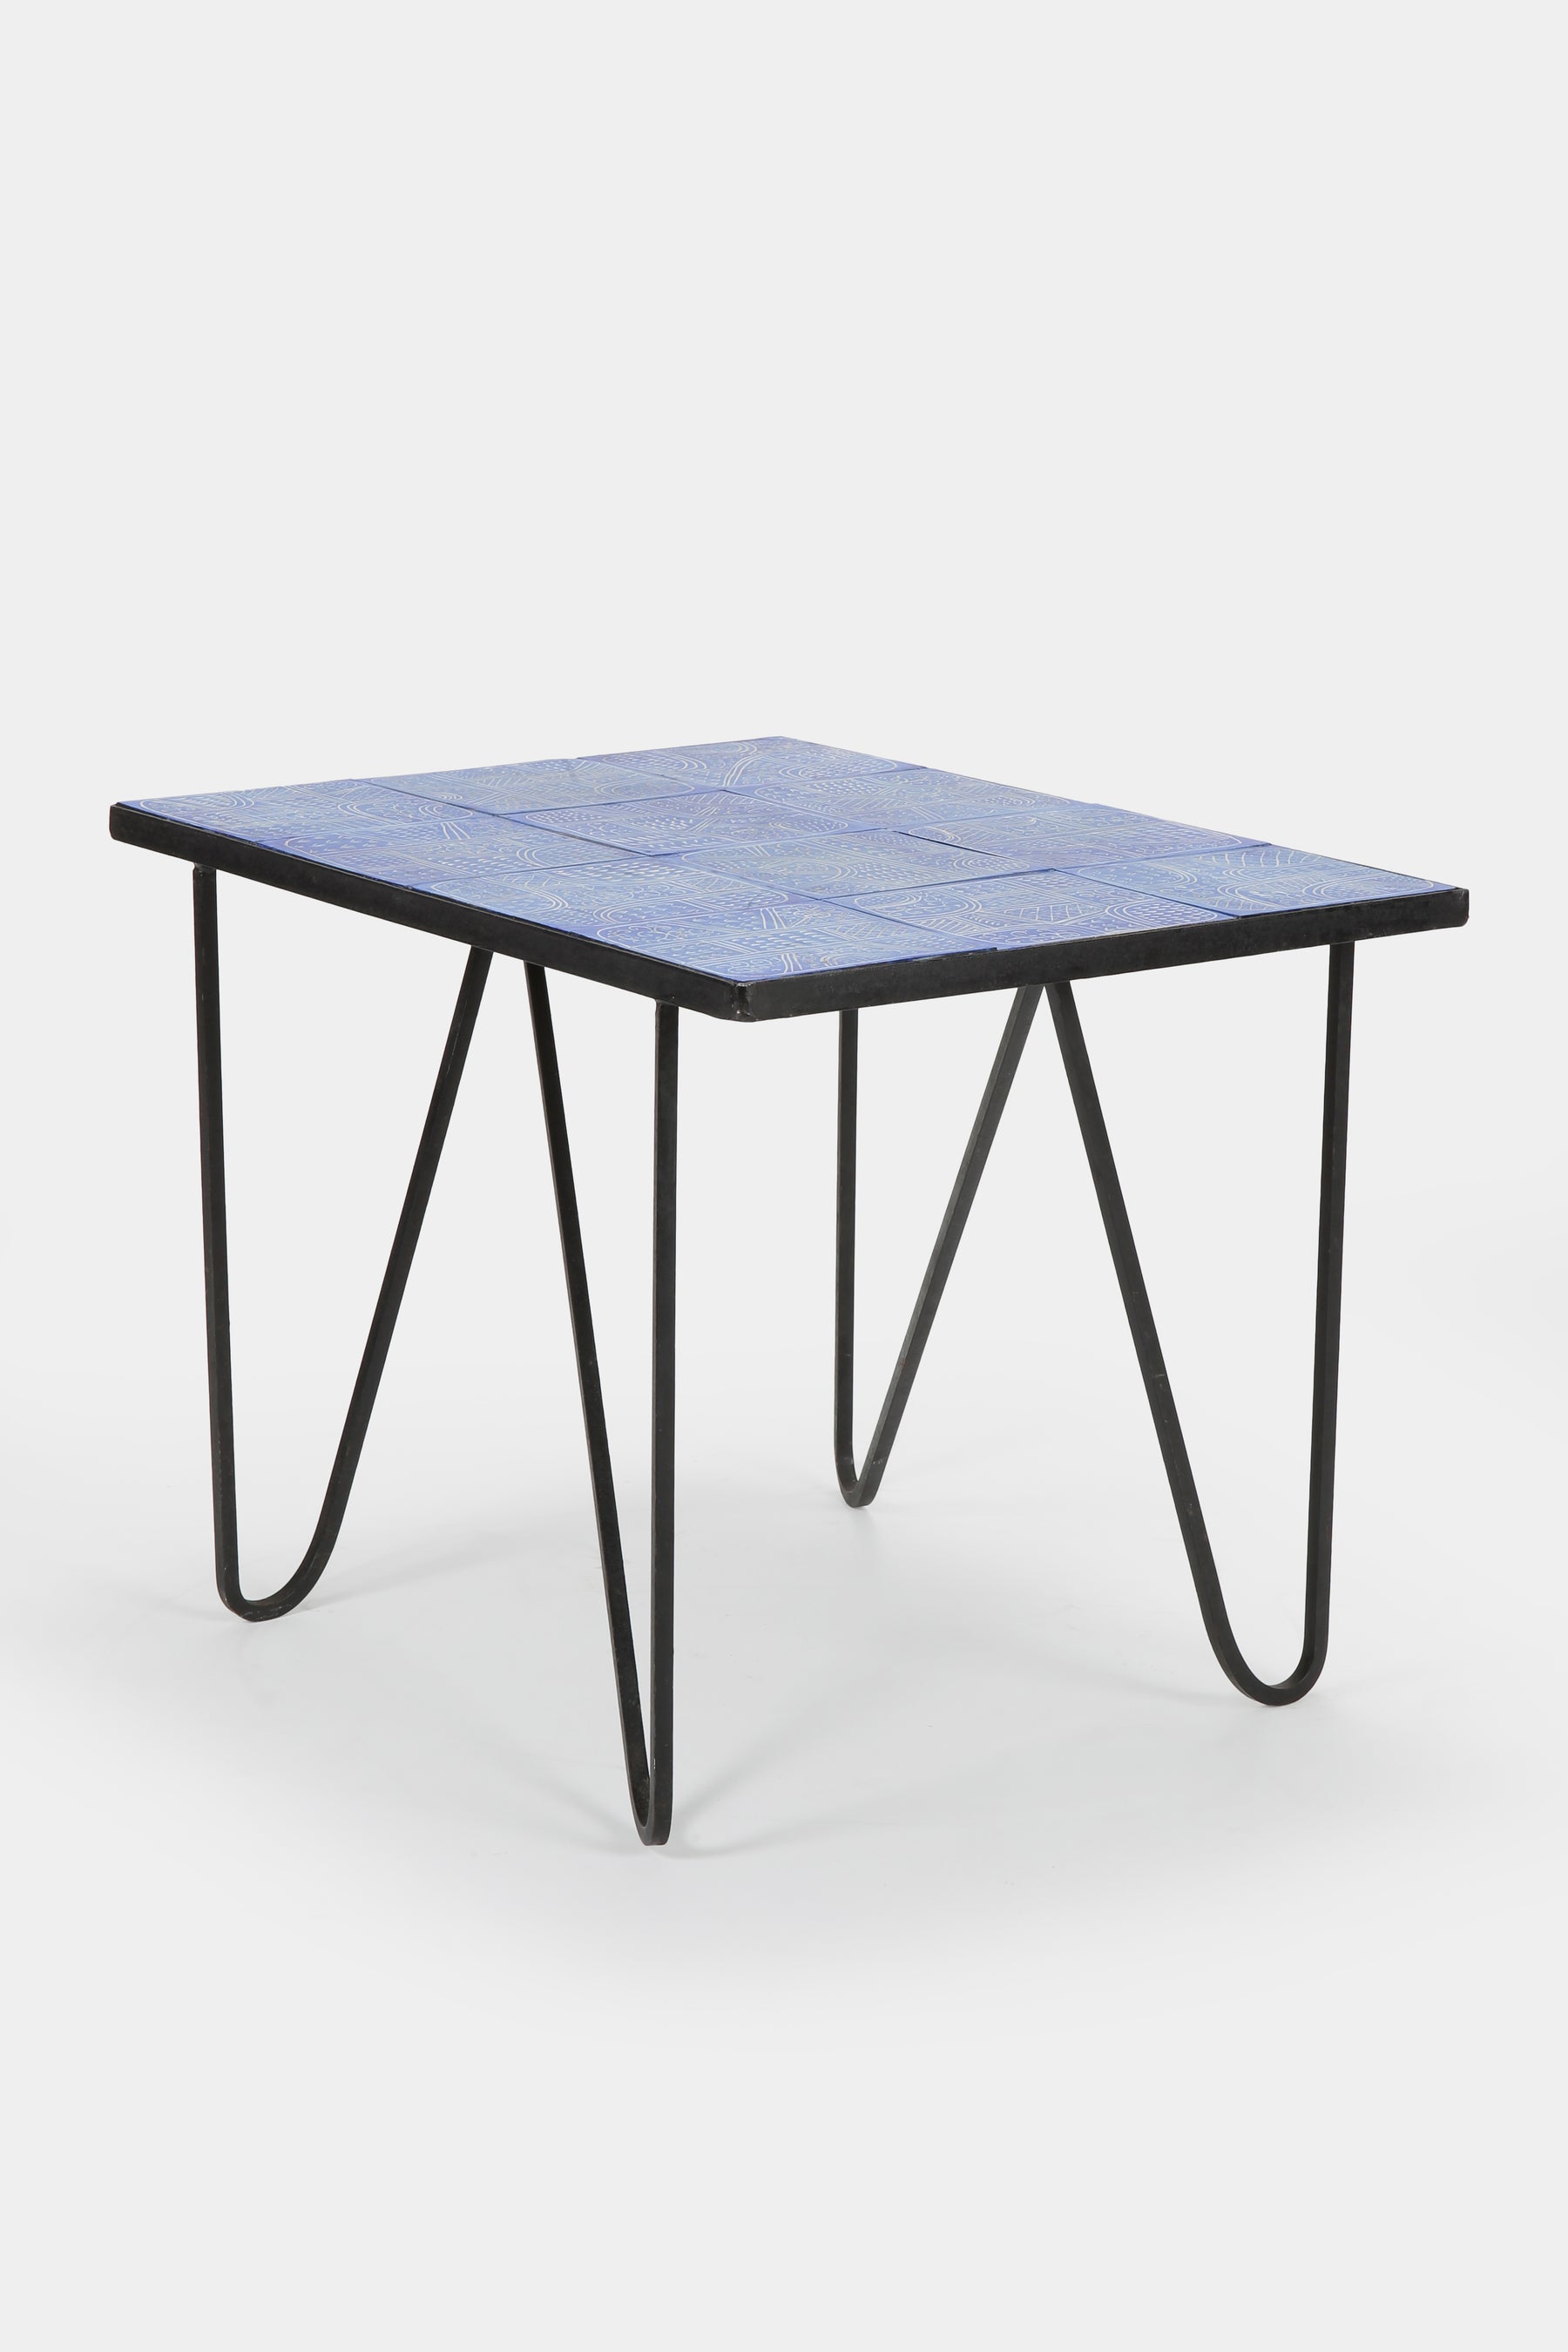 Yvain Paul Ceramic Table Keraluc, 50s